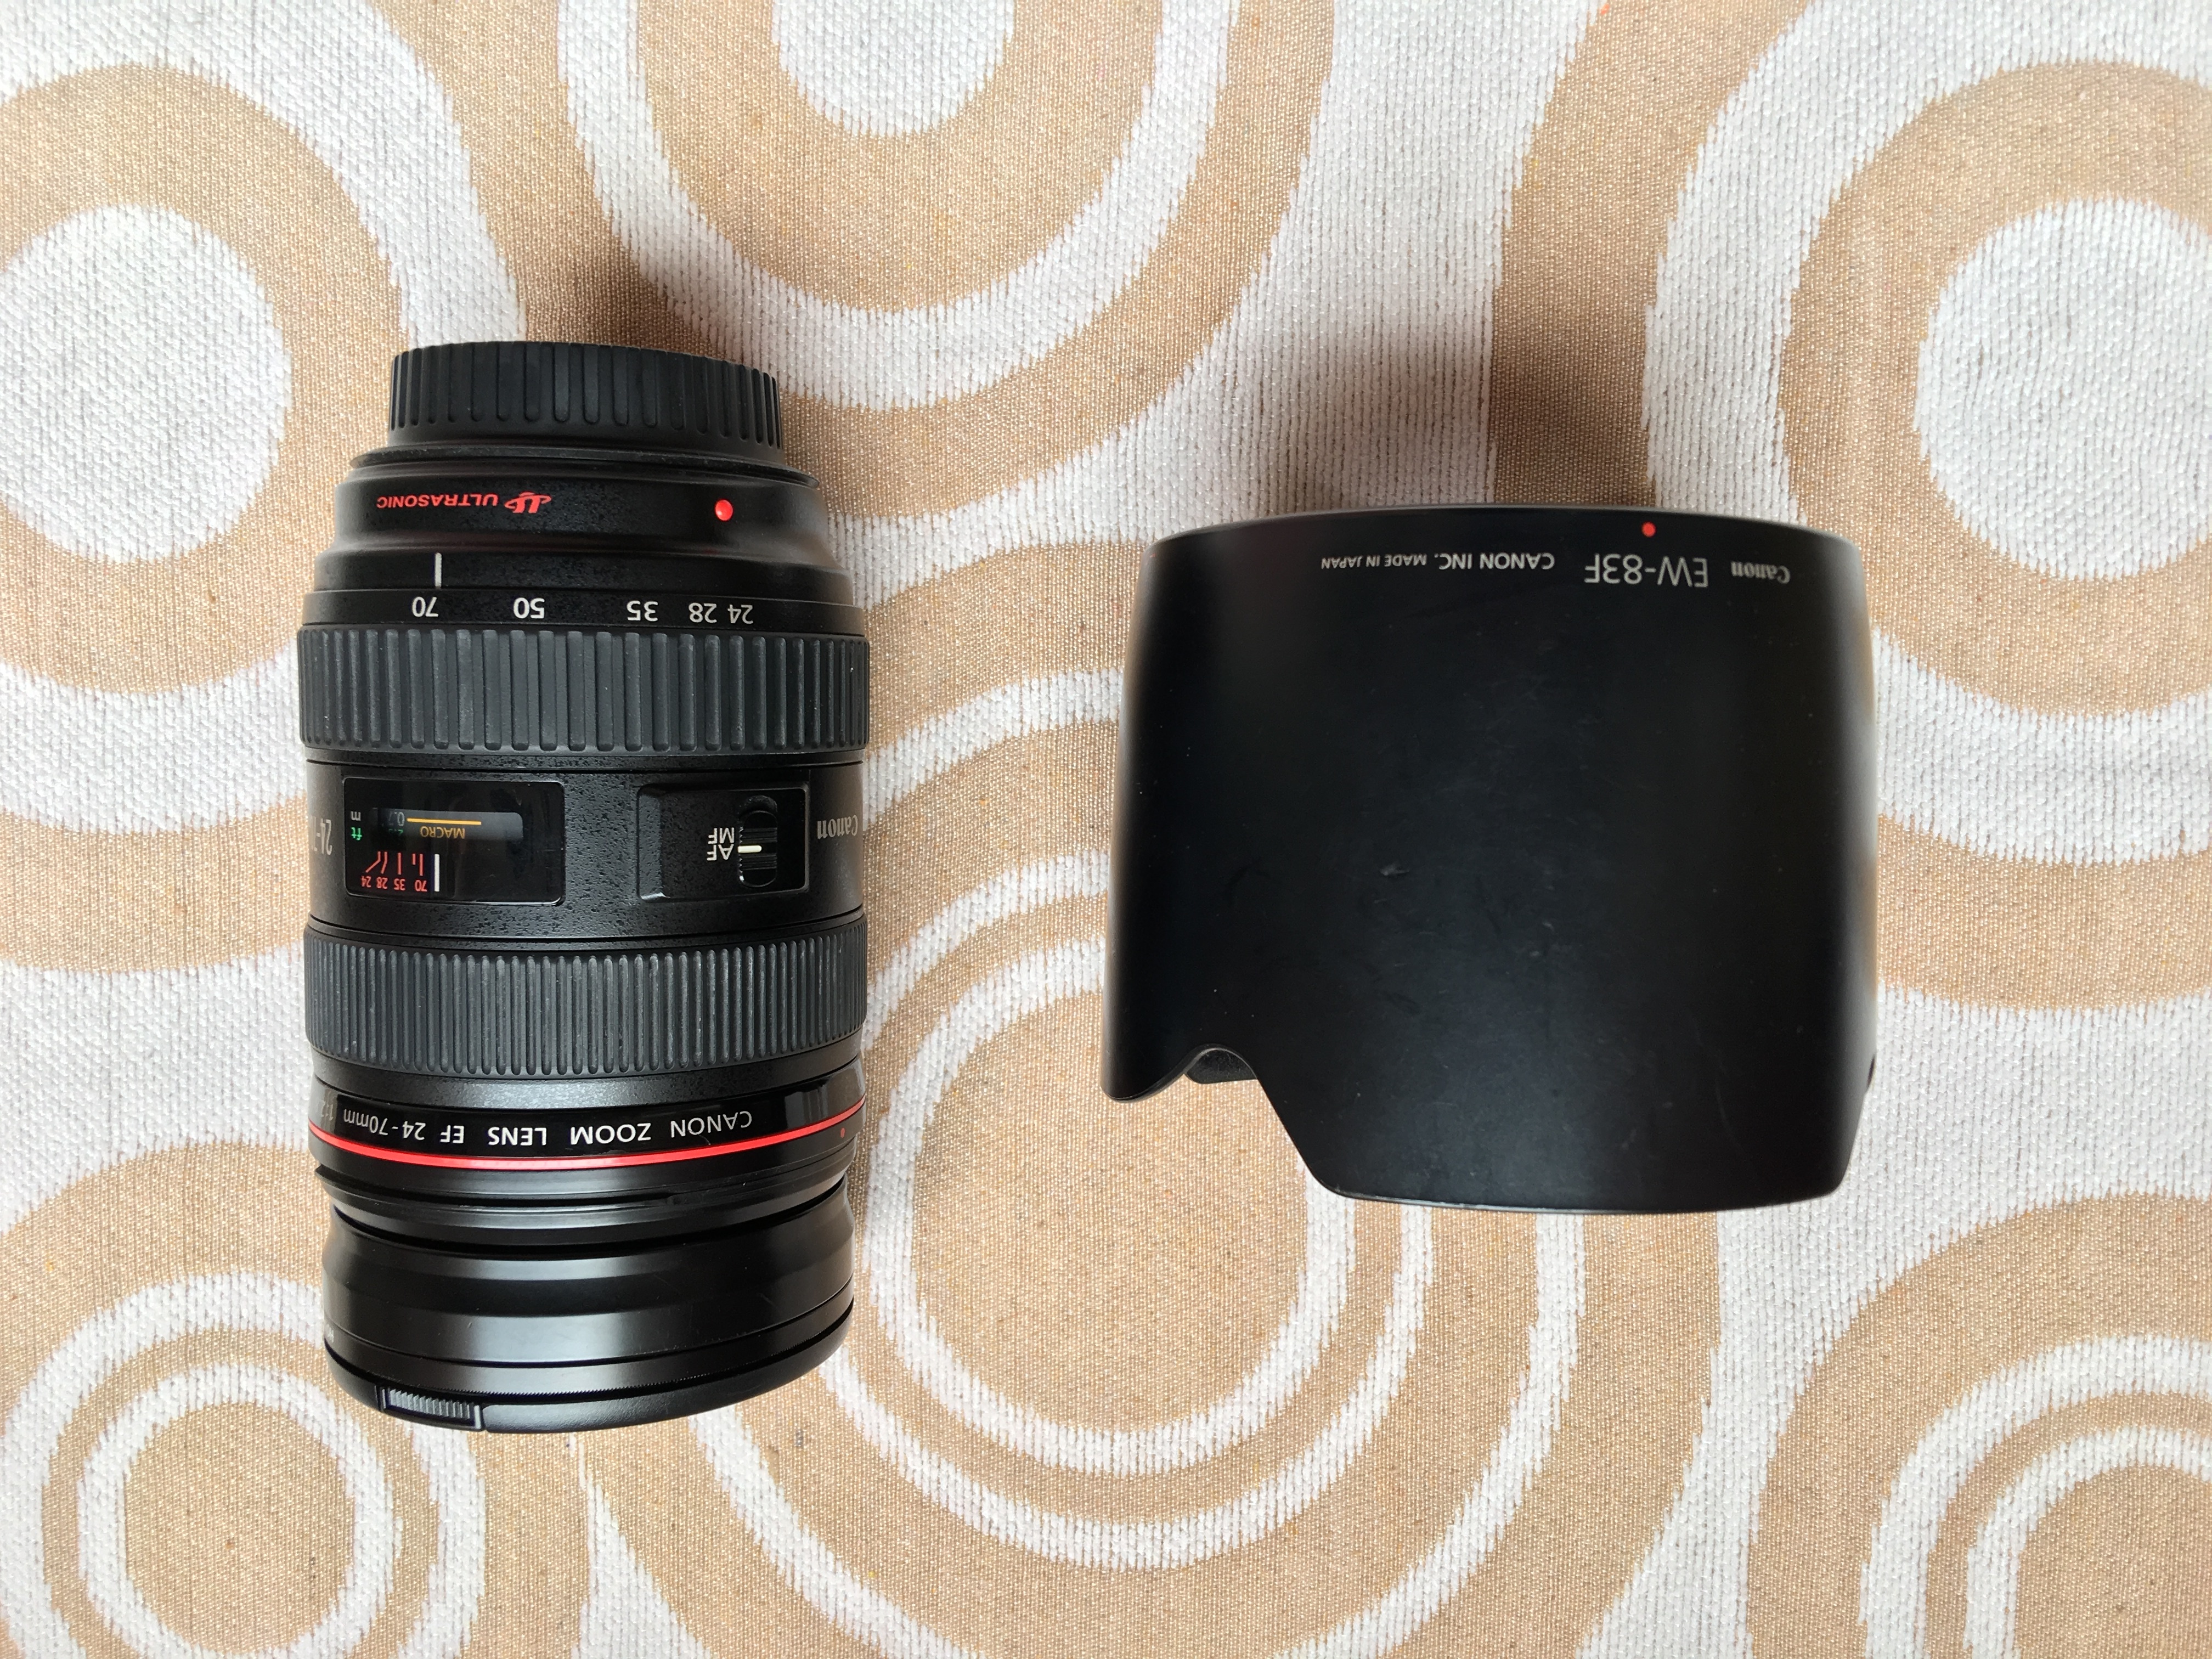 佳能 EF 24-70mm f/2.8L USM    一代镜头  对焦润滑无杂音